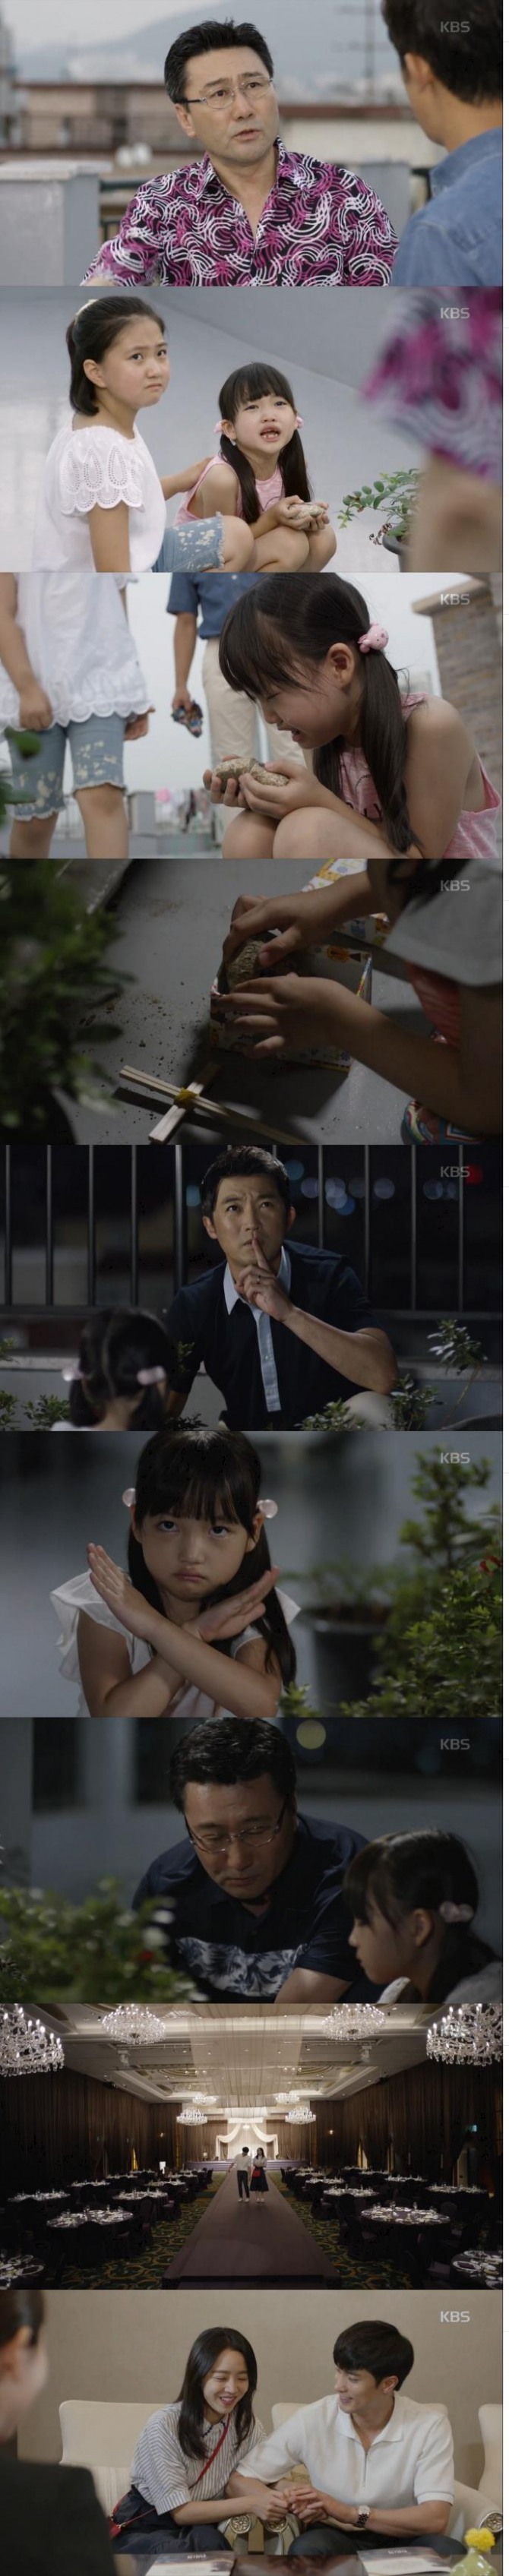 14일 방송된 KBS2 주말드라마 '아이가 다섯'에서 장민호(최정우 )가 극 초반 밉상 캐릭터에서 훈남 항아버지로 거듭나는 모습이 그려지며 화제를 모으고 있다.= KBS2 방송 캡처